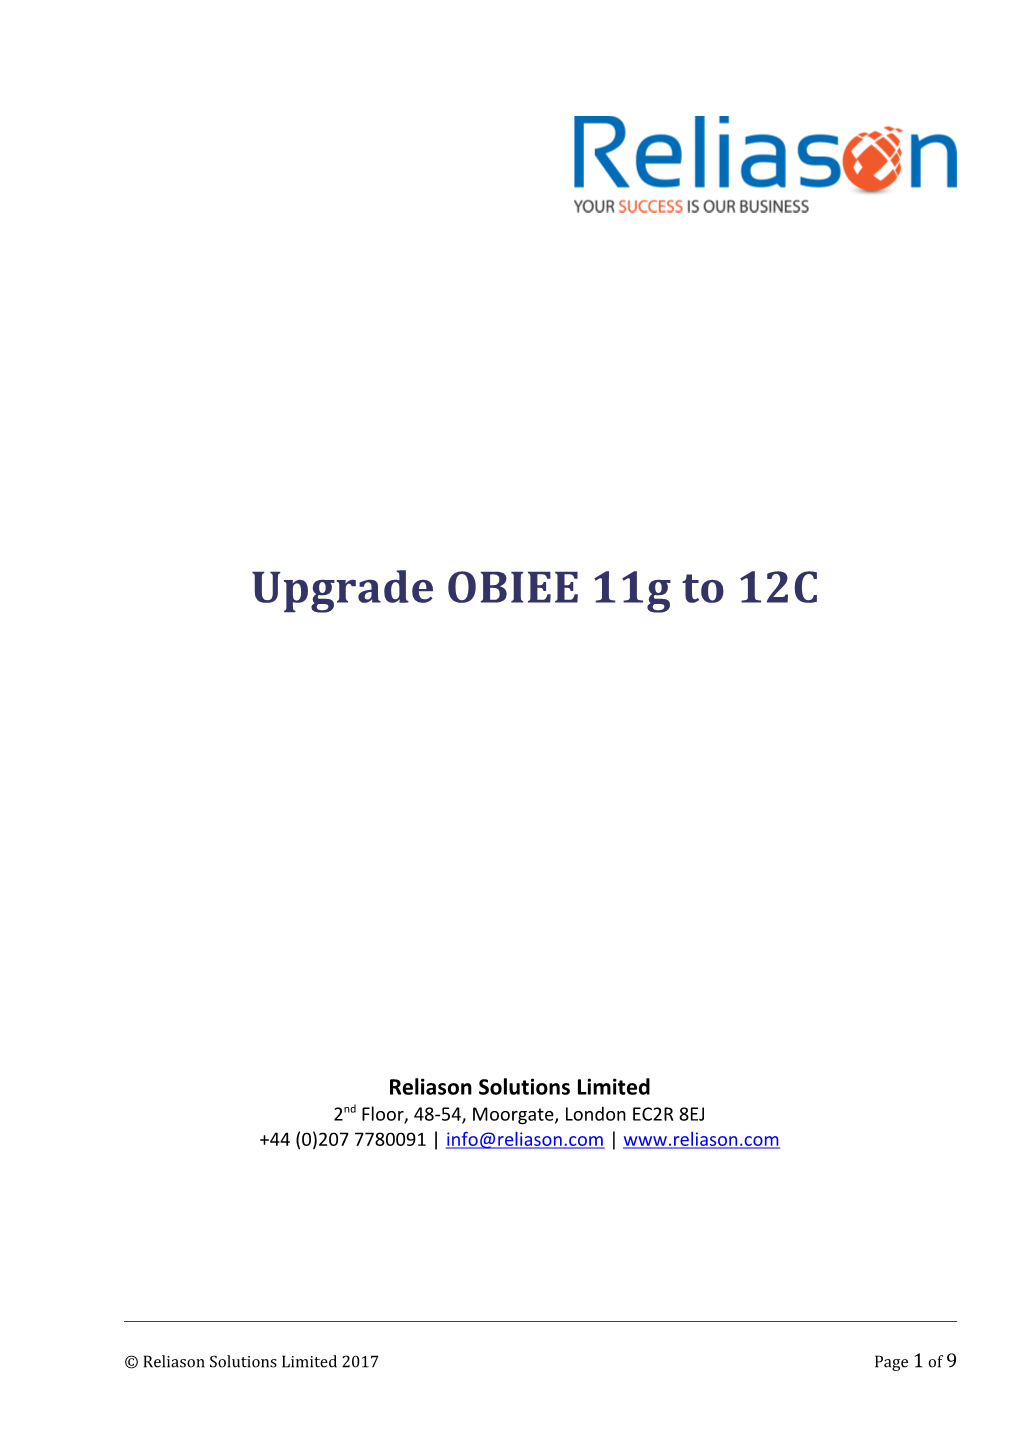 Upgrade OBIEE 11G to 12C